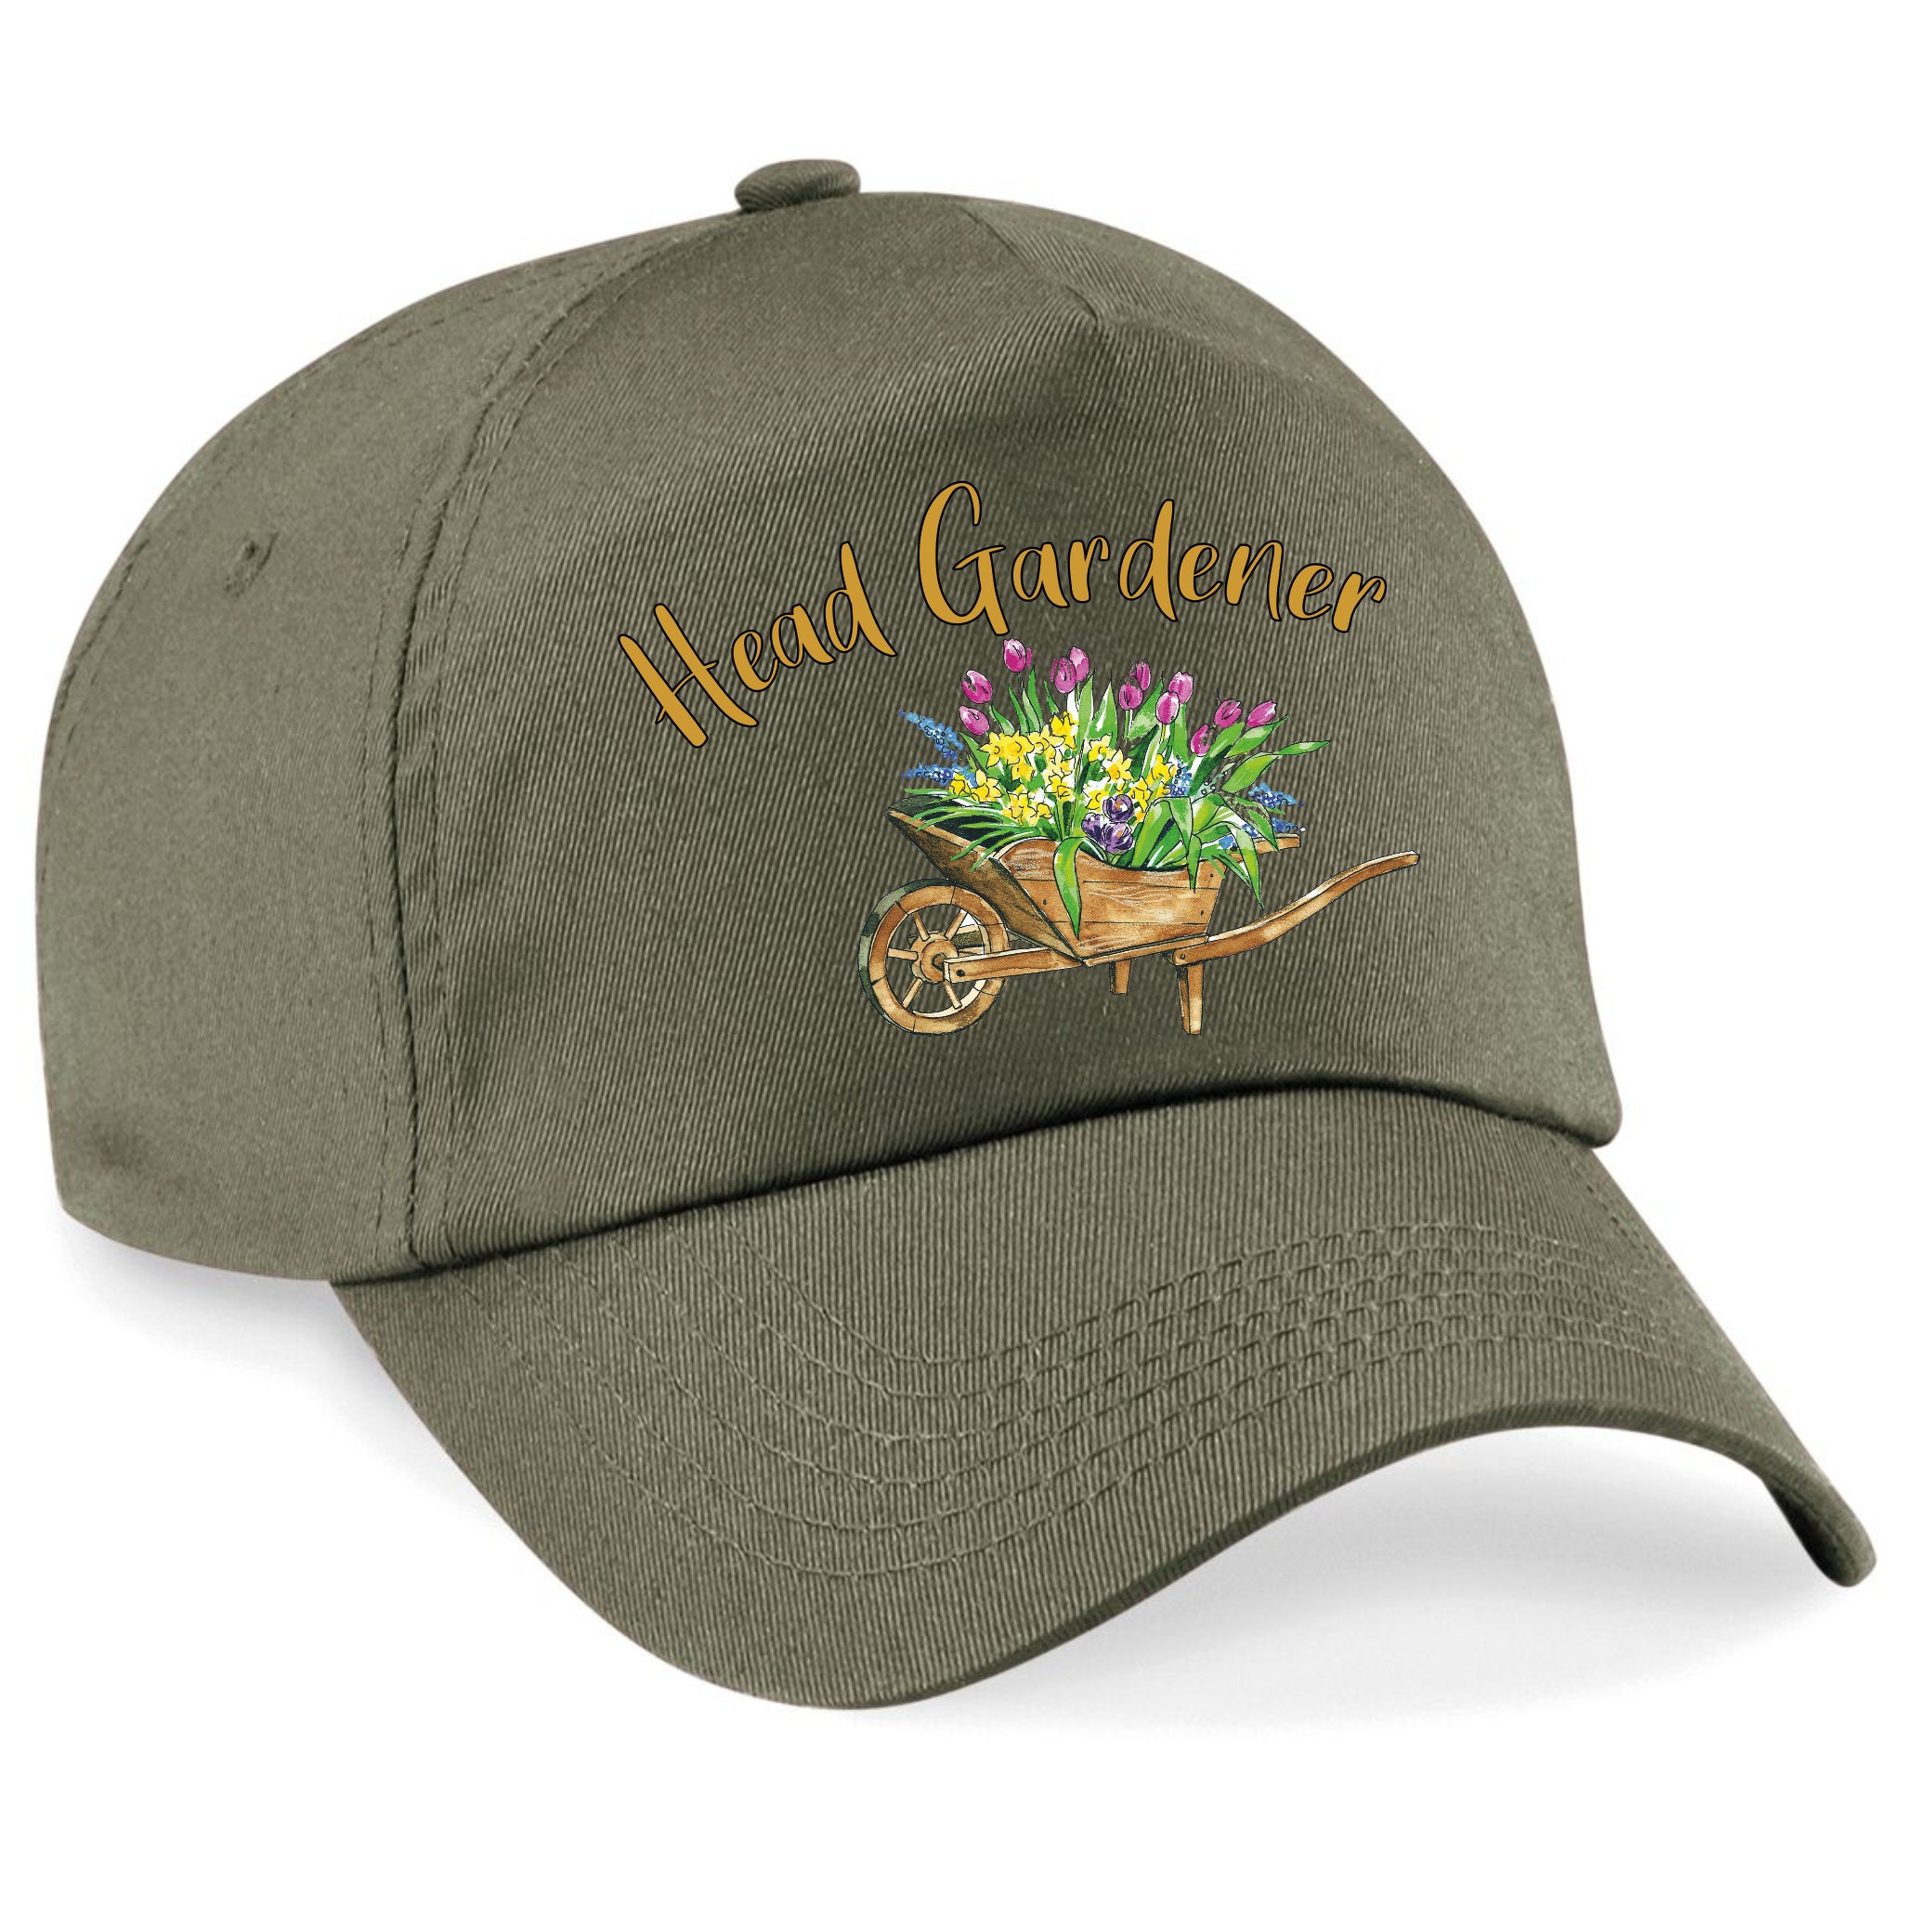 Head Gardener Baseball Cap for Gardeners Wheelbarrow Full of